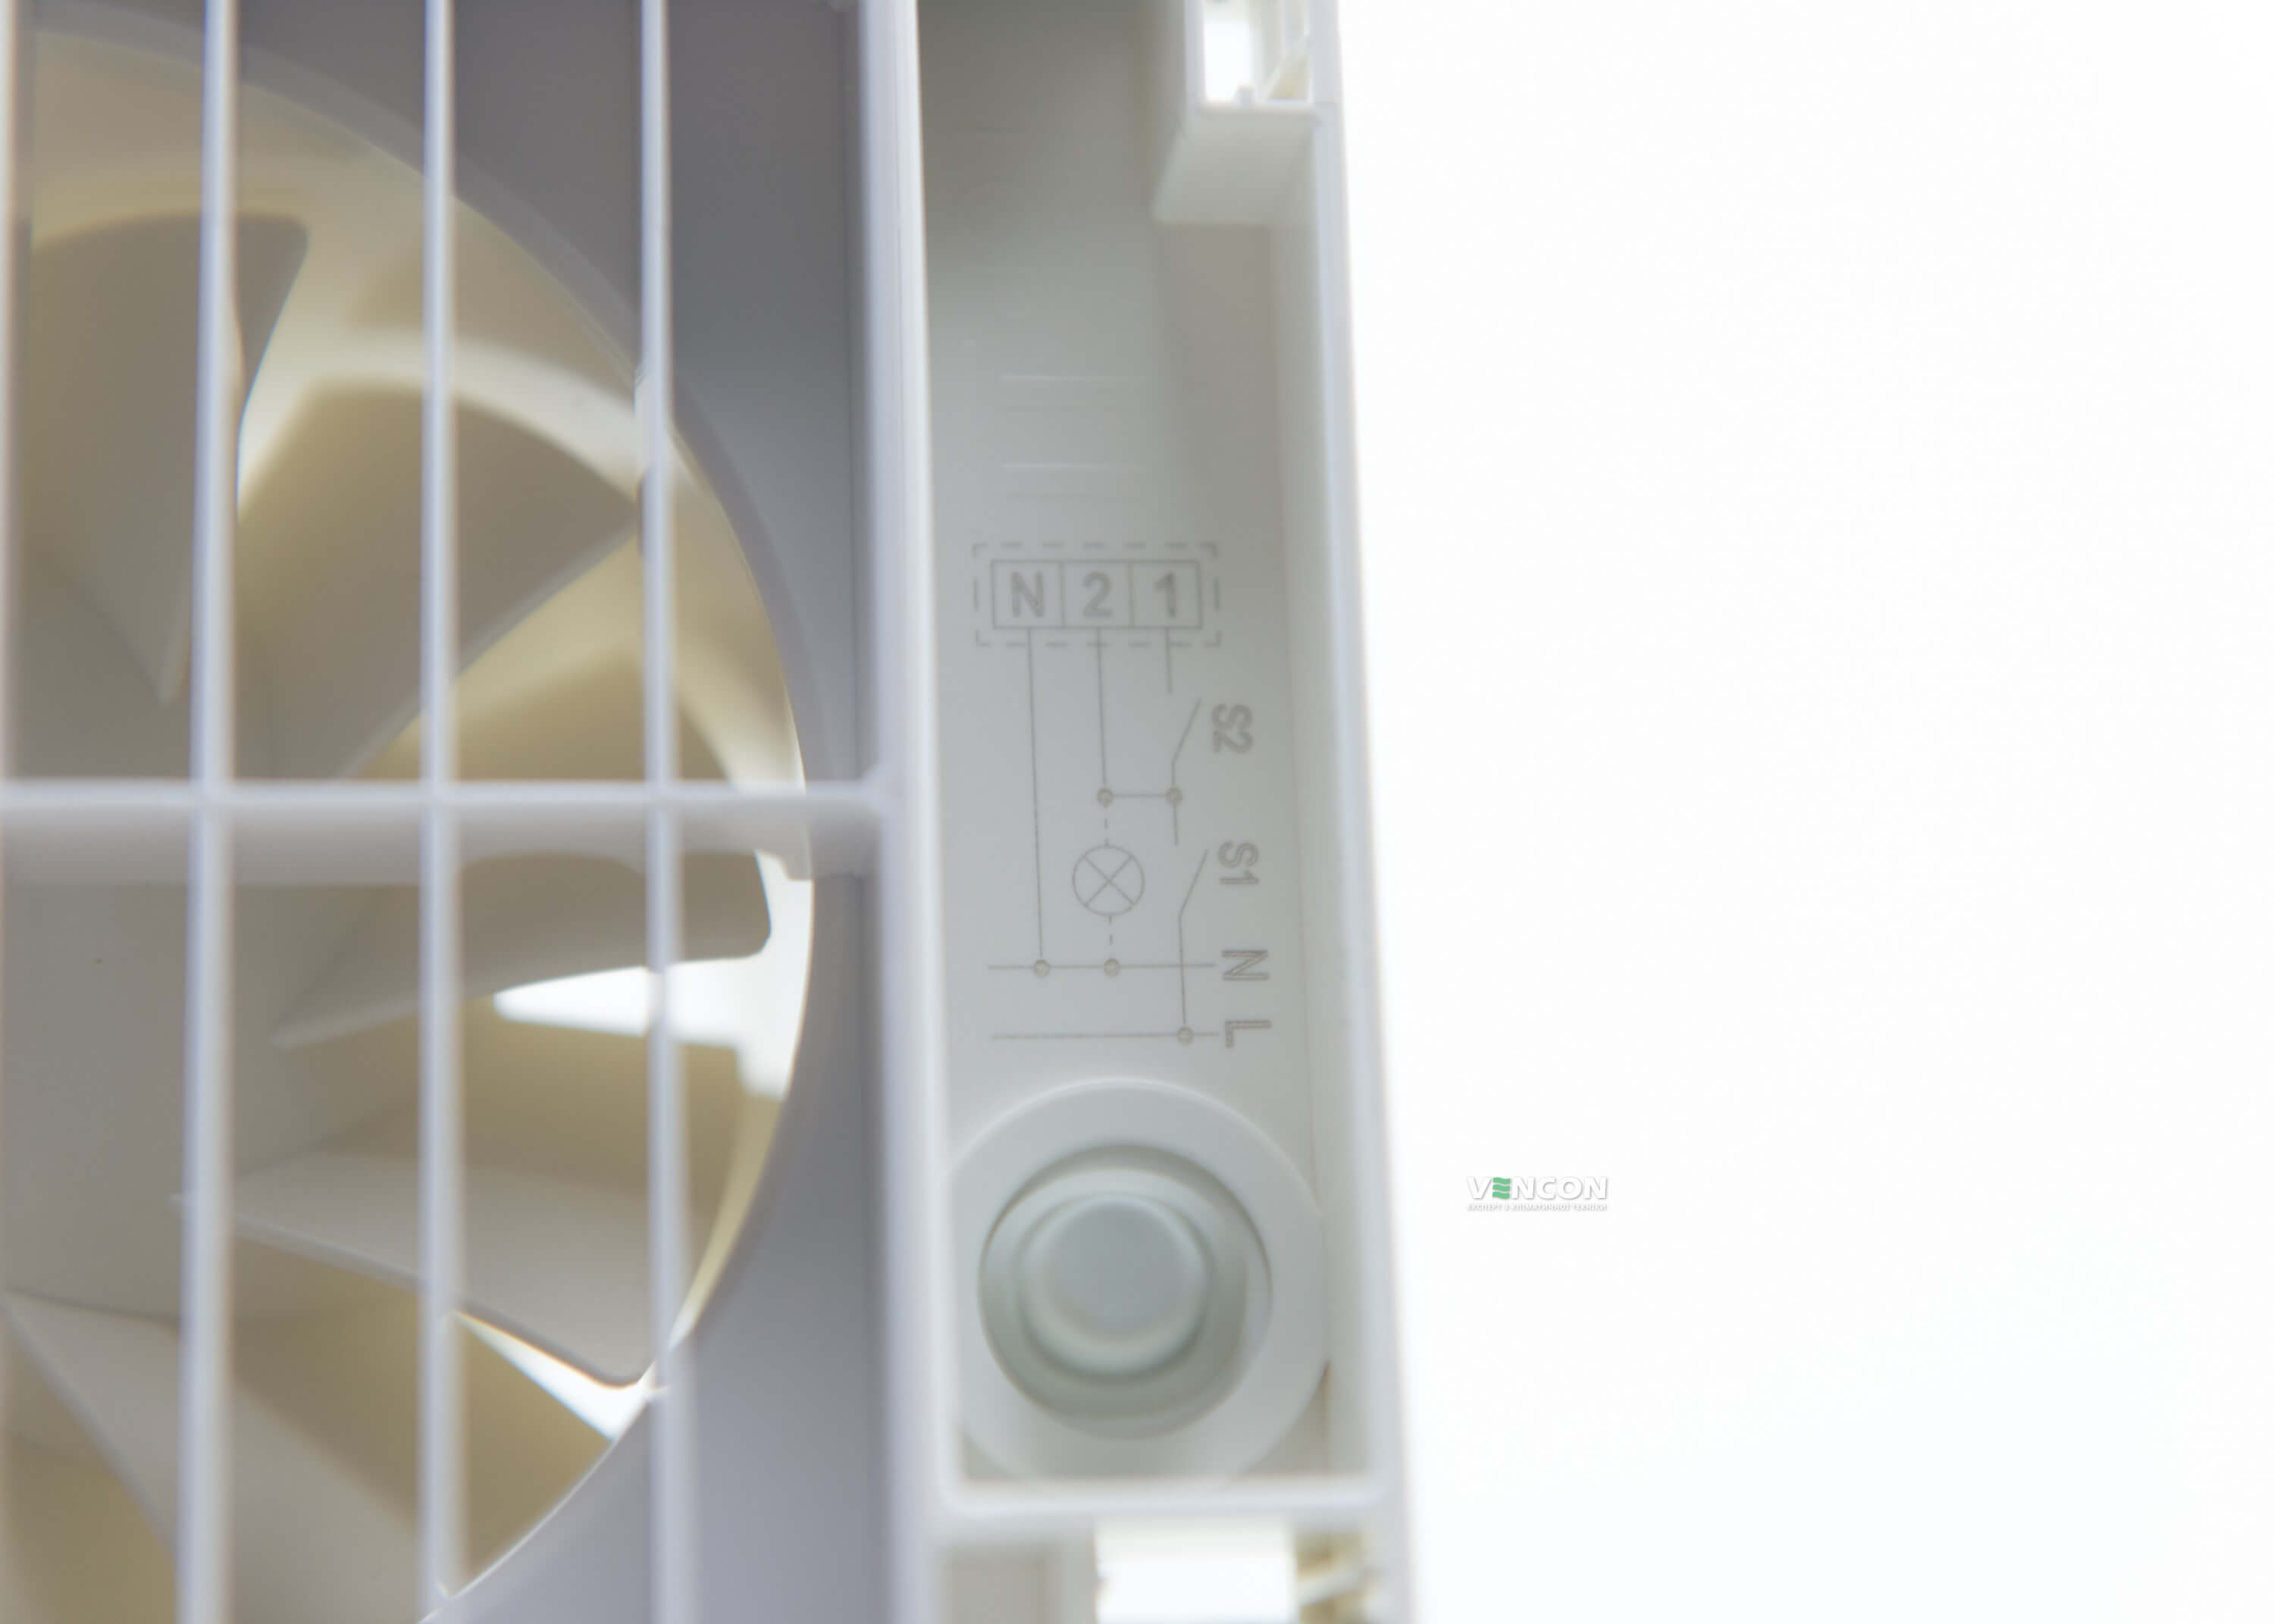 Вытяжной вентилятор Maico ECA 150 ipro B отзывы - изображения 5